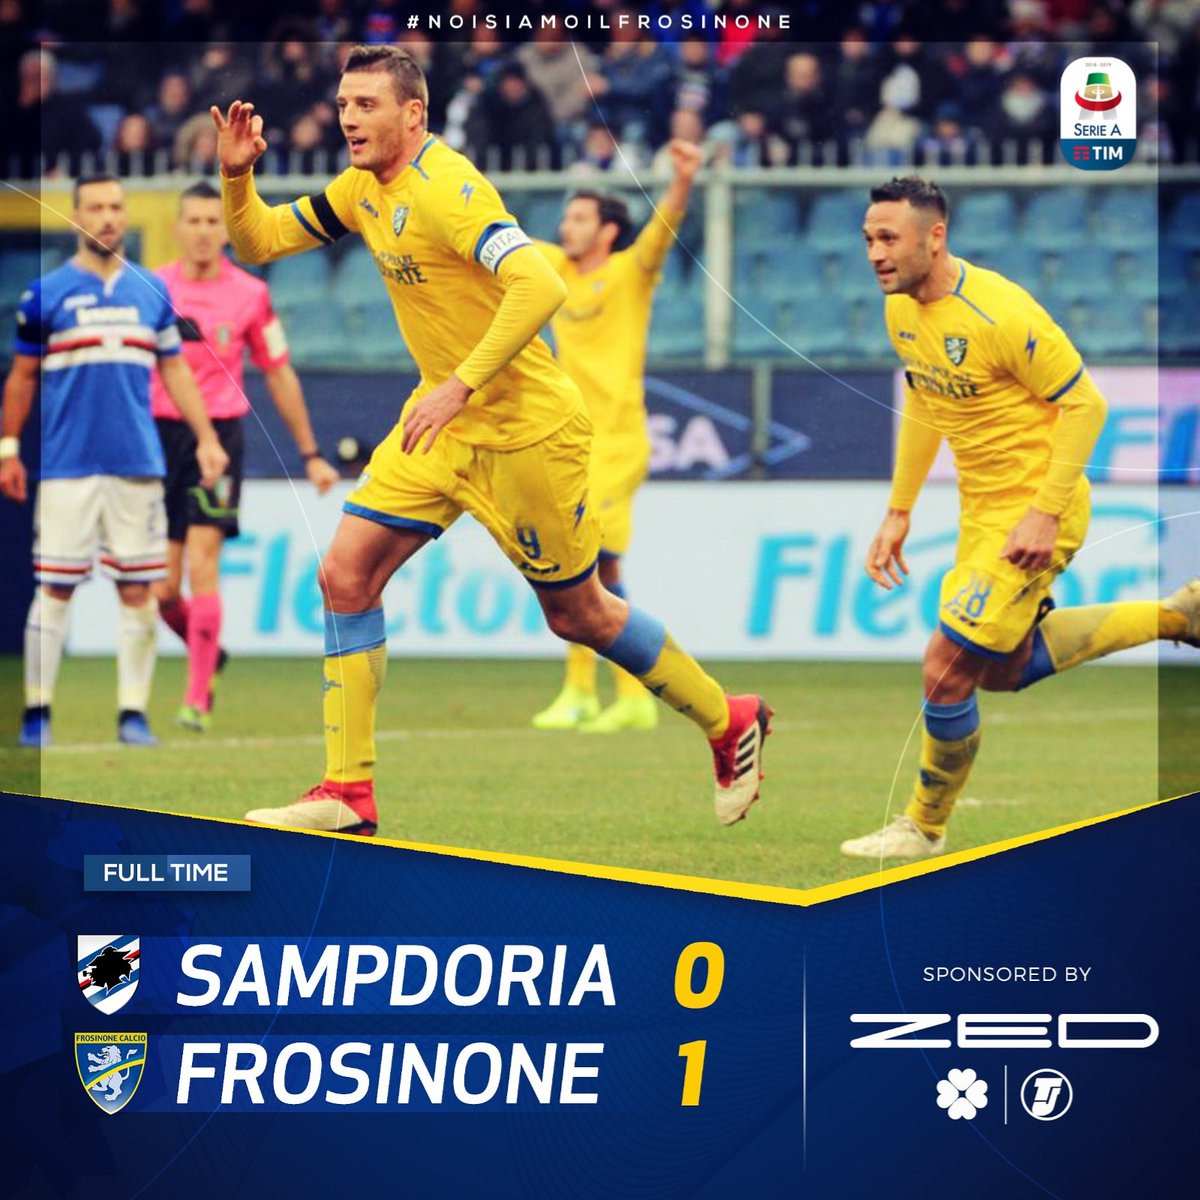 Serie A-La Sampdoria prende una brutta sconfitta contro il Frosinone a Marassi(0-1)